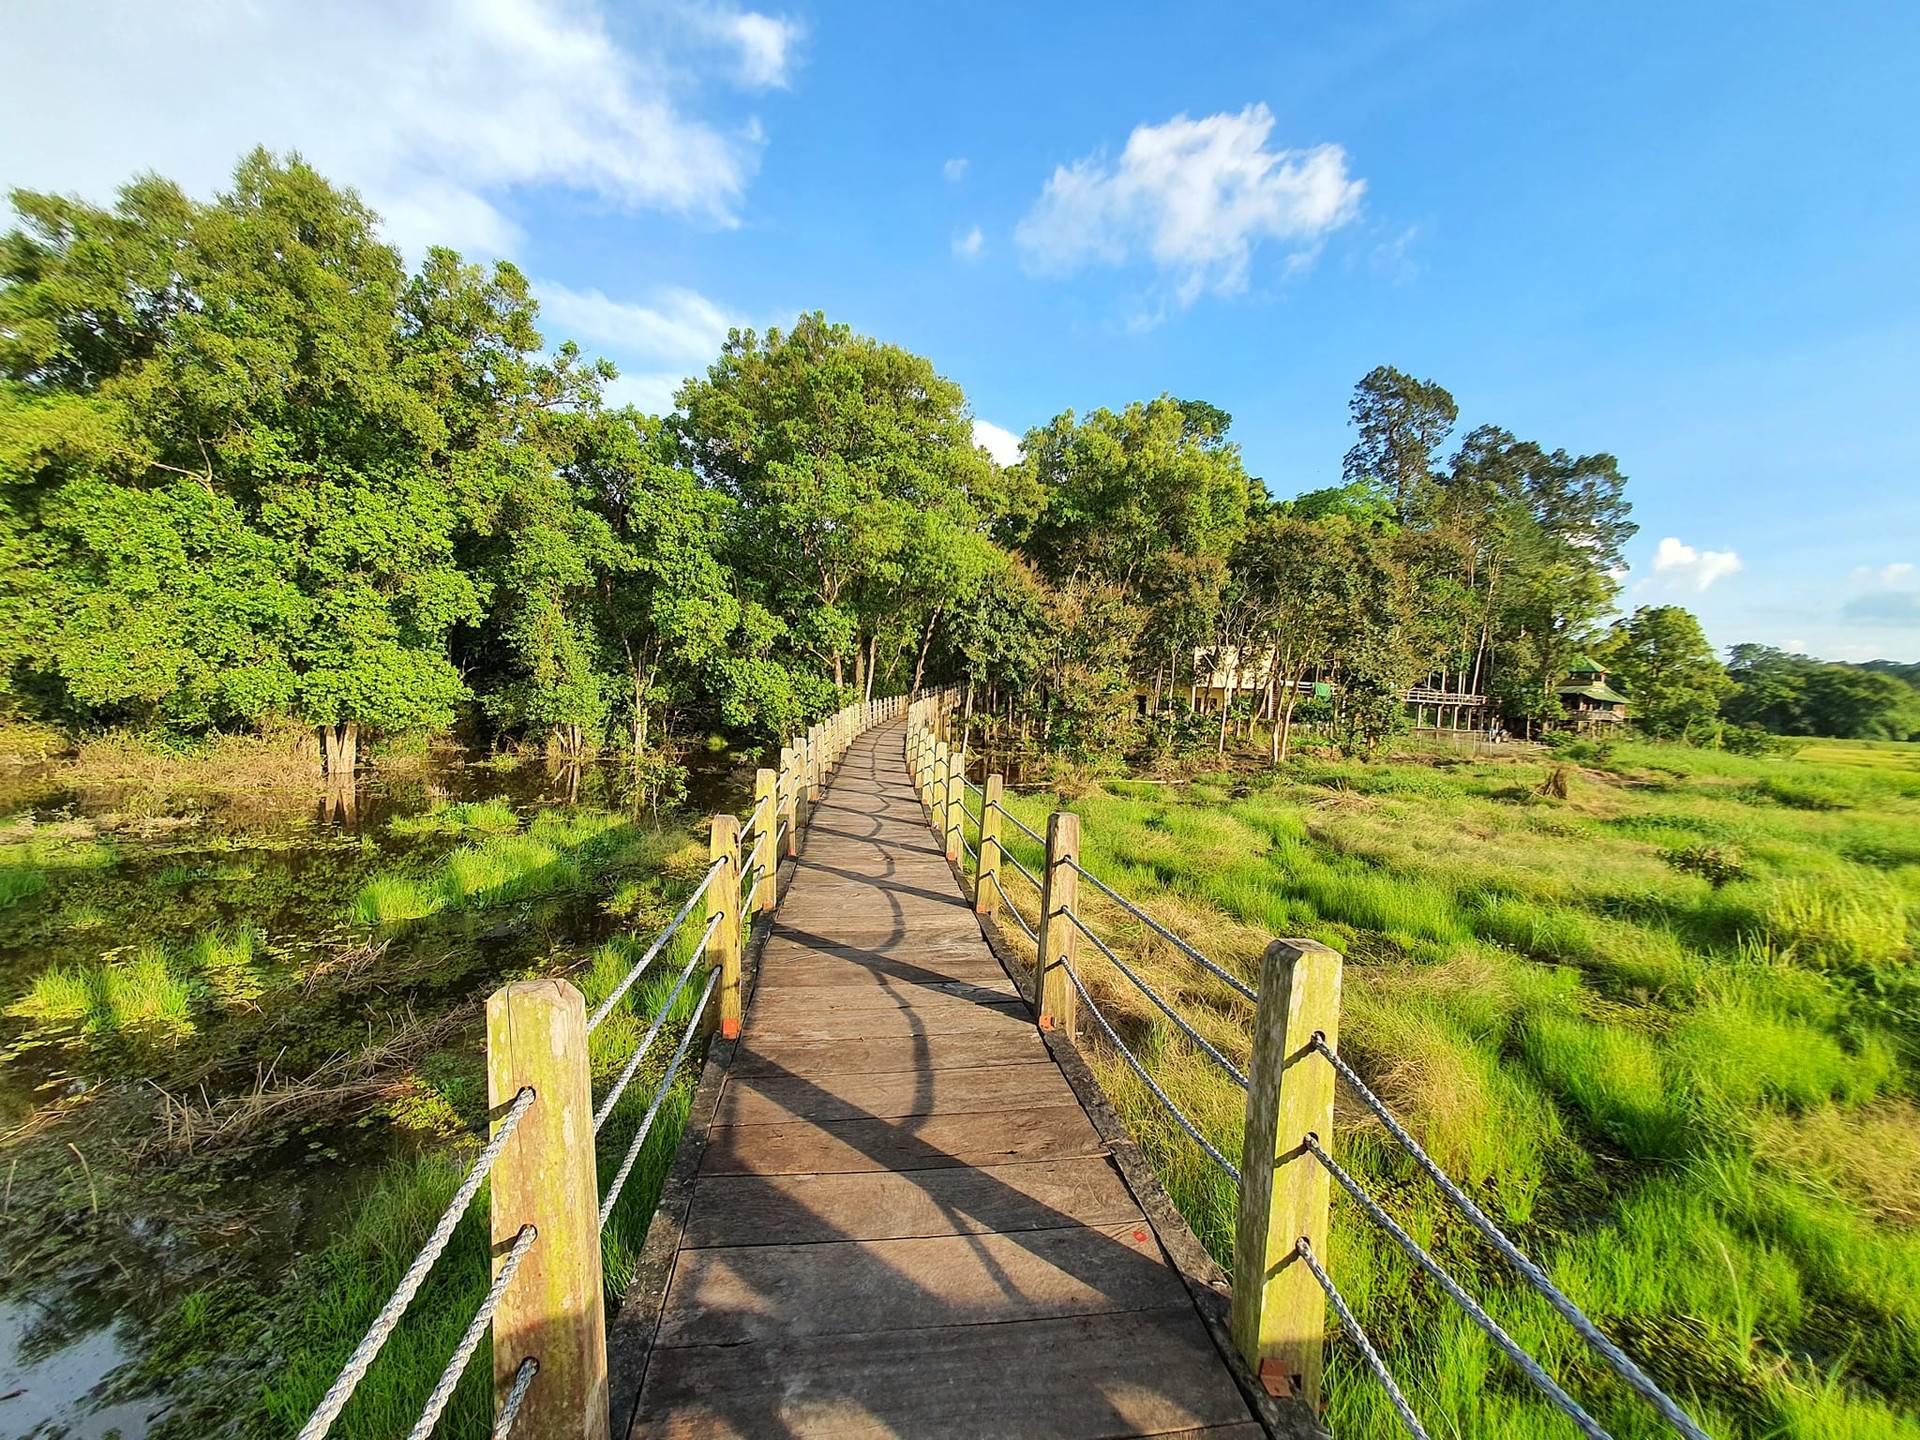 Vườn Quốc gia Nam Cát Tiên